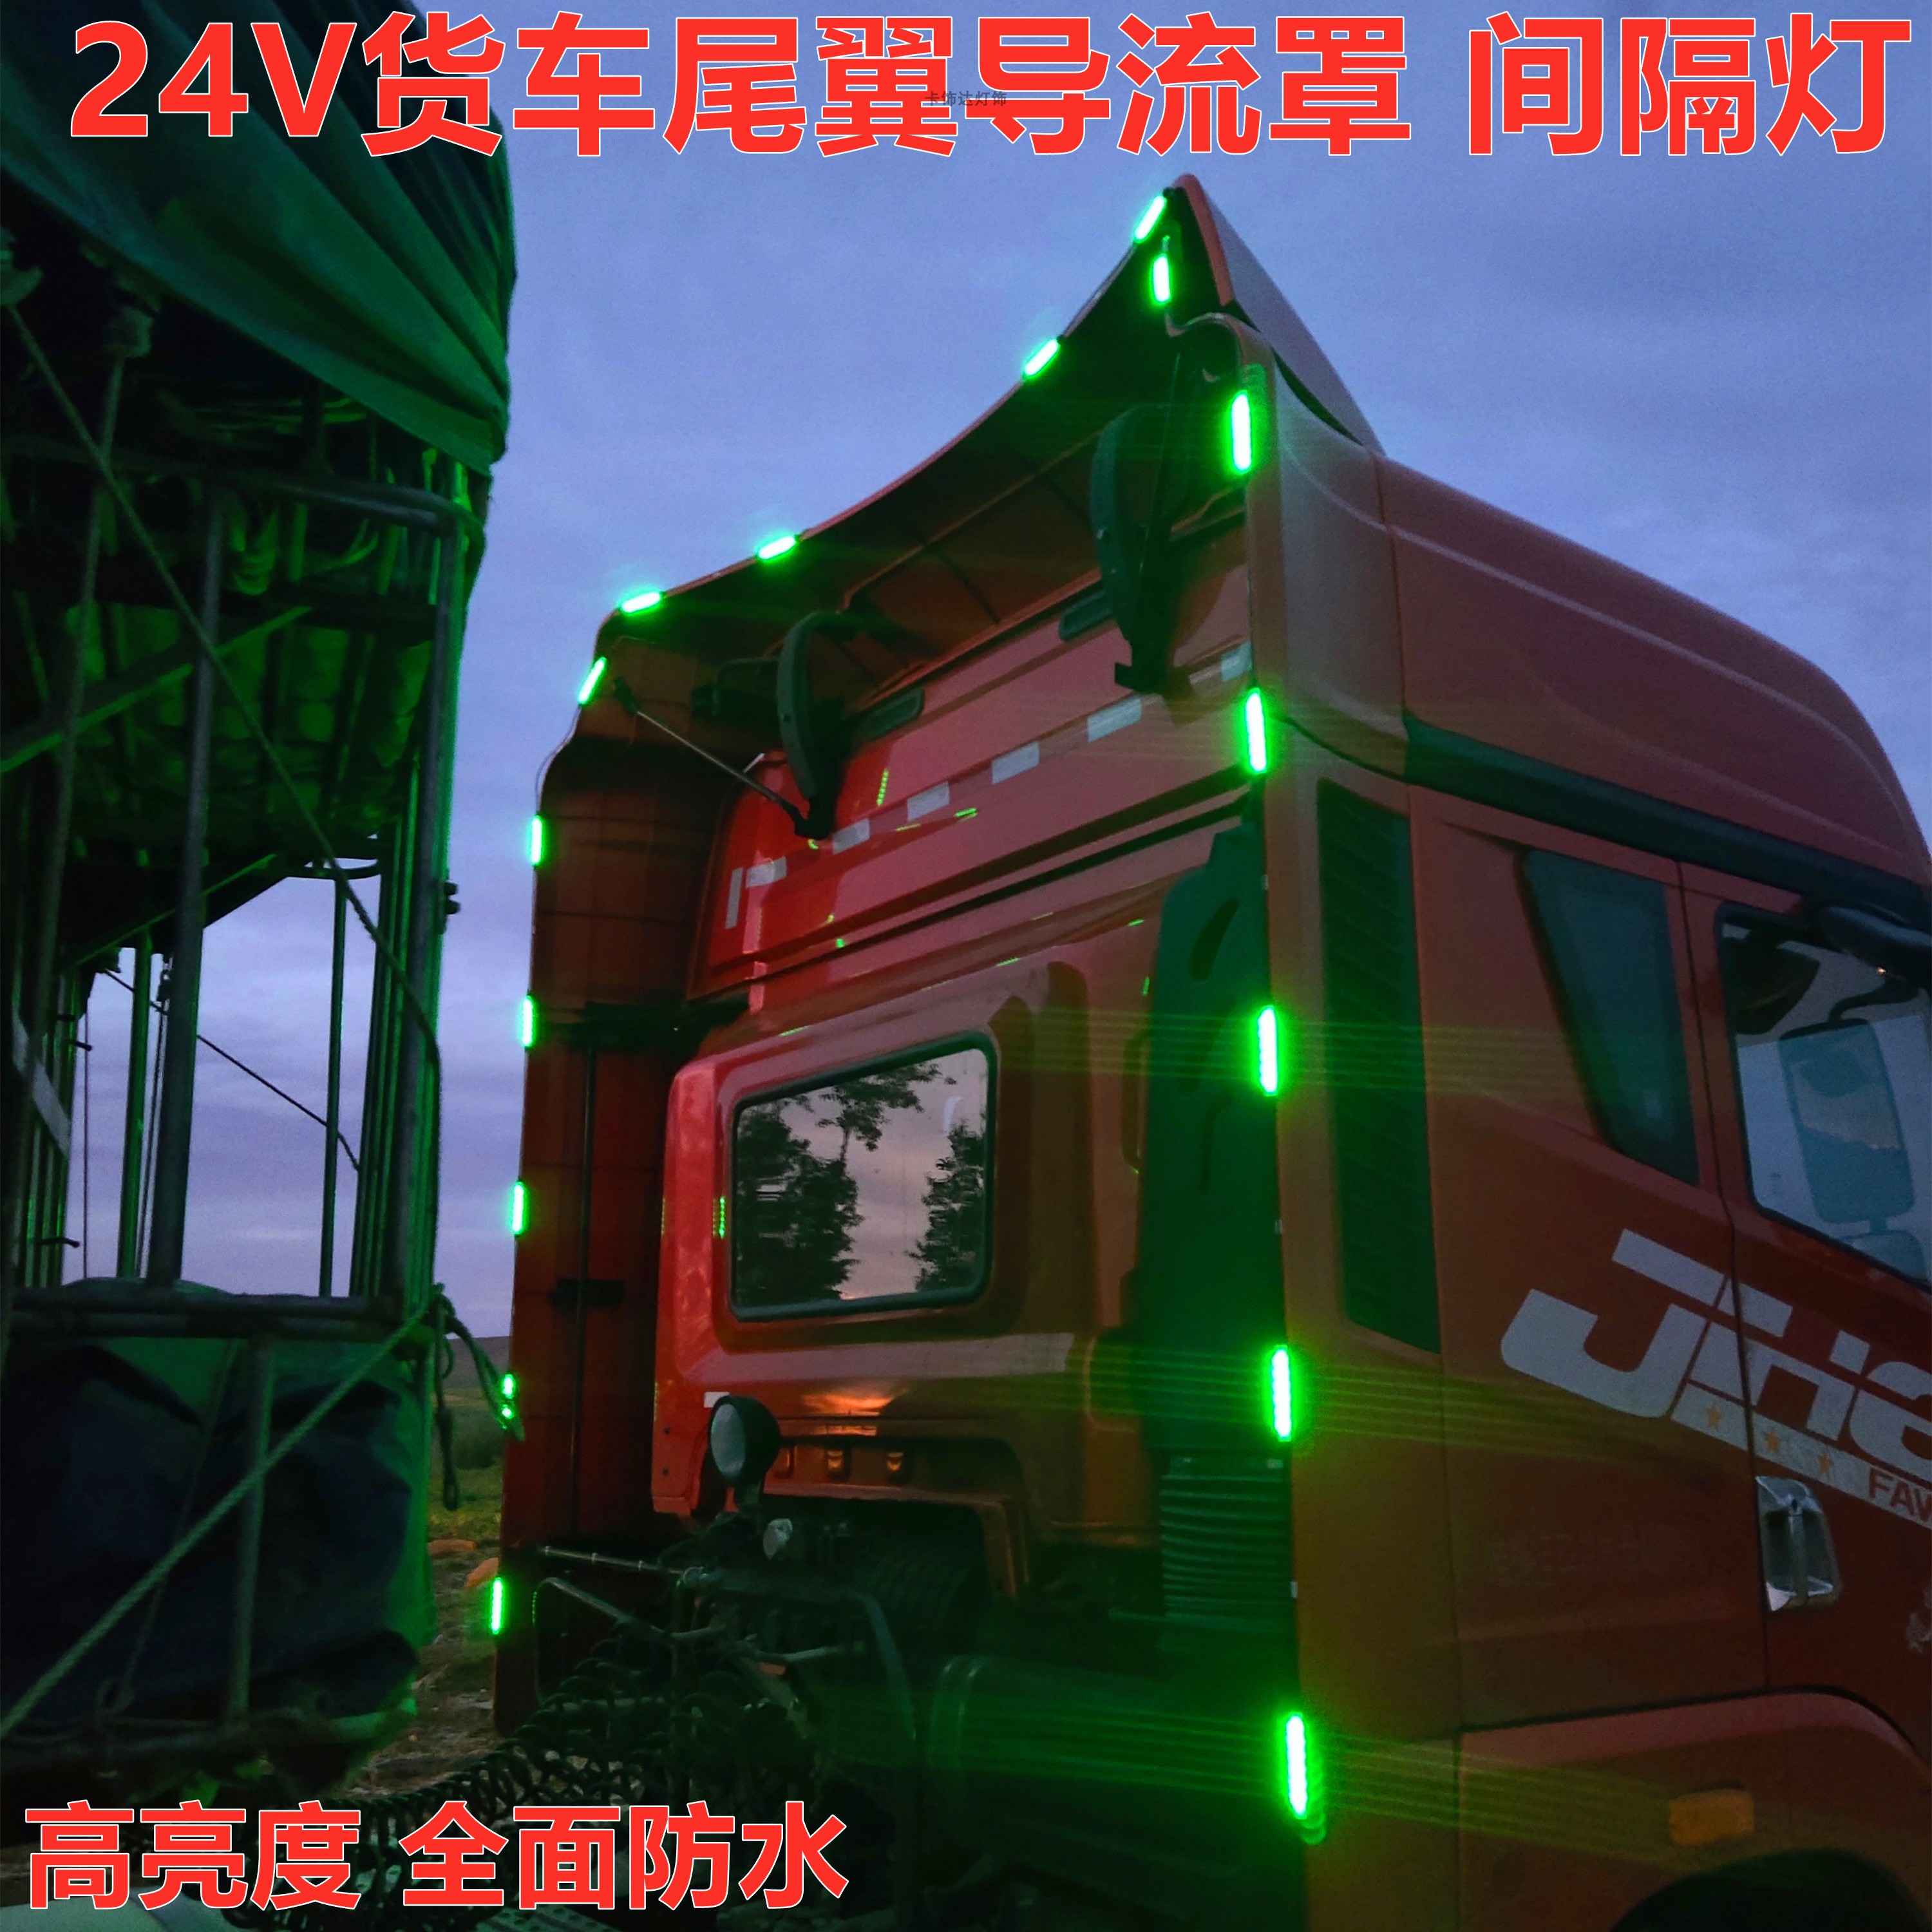 24V货车卡车改装尾翼后导流罩隔断灯高亮防水侧边灯led中网警示灯